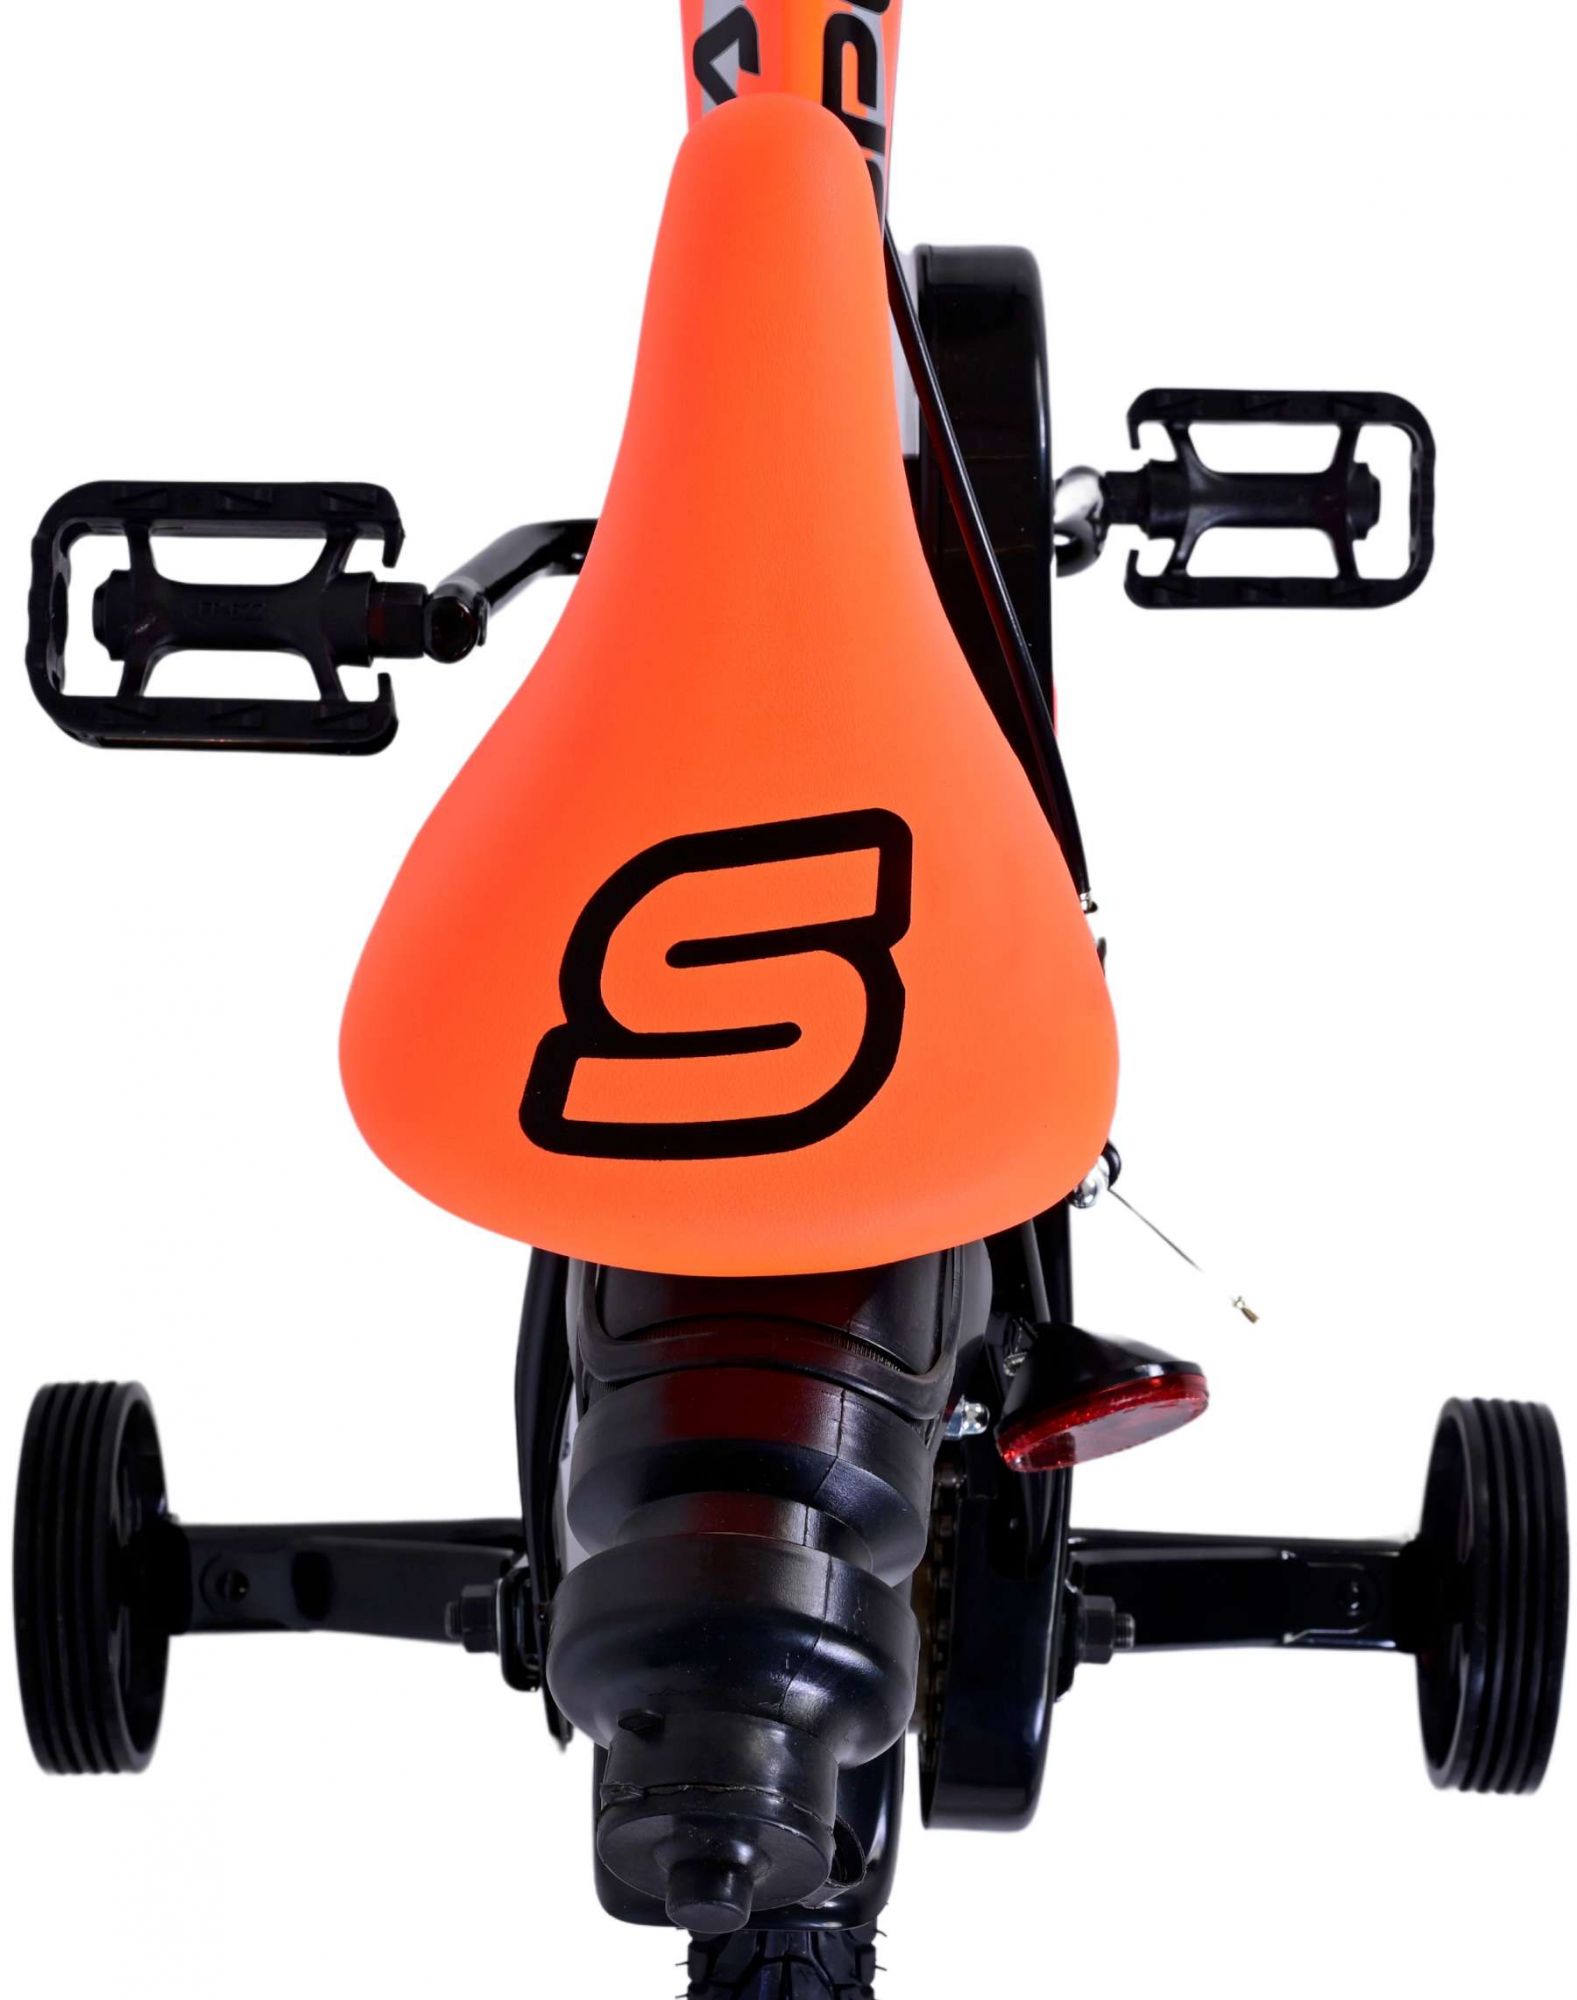 Kinderfahrrad Sportivo Jungen 14 Zoll Kinderrad Neon Orange Schwarz